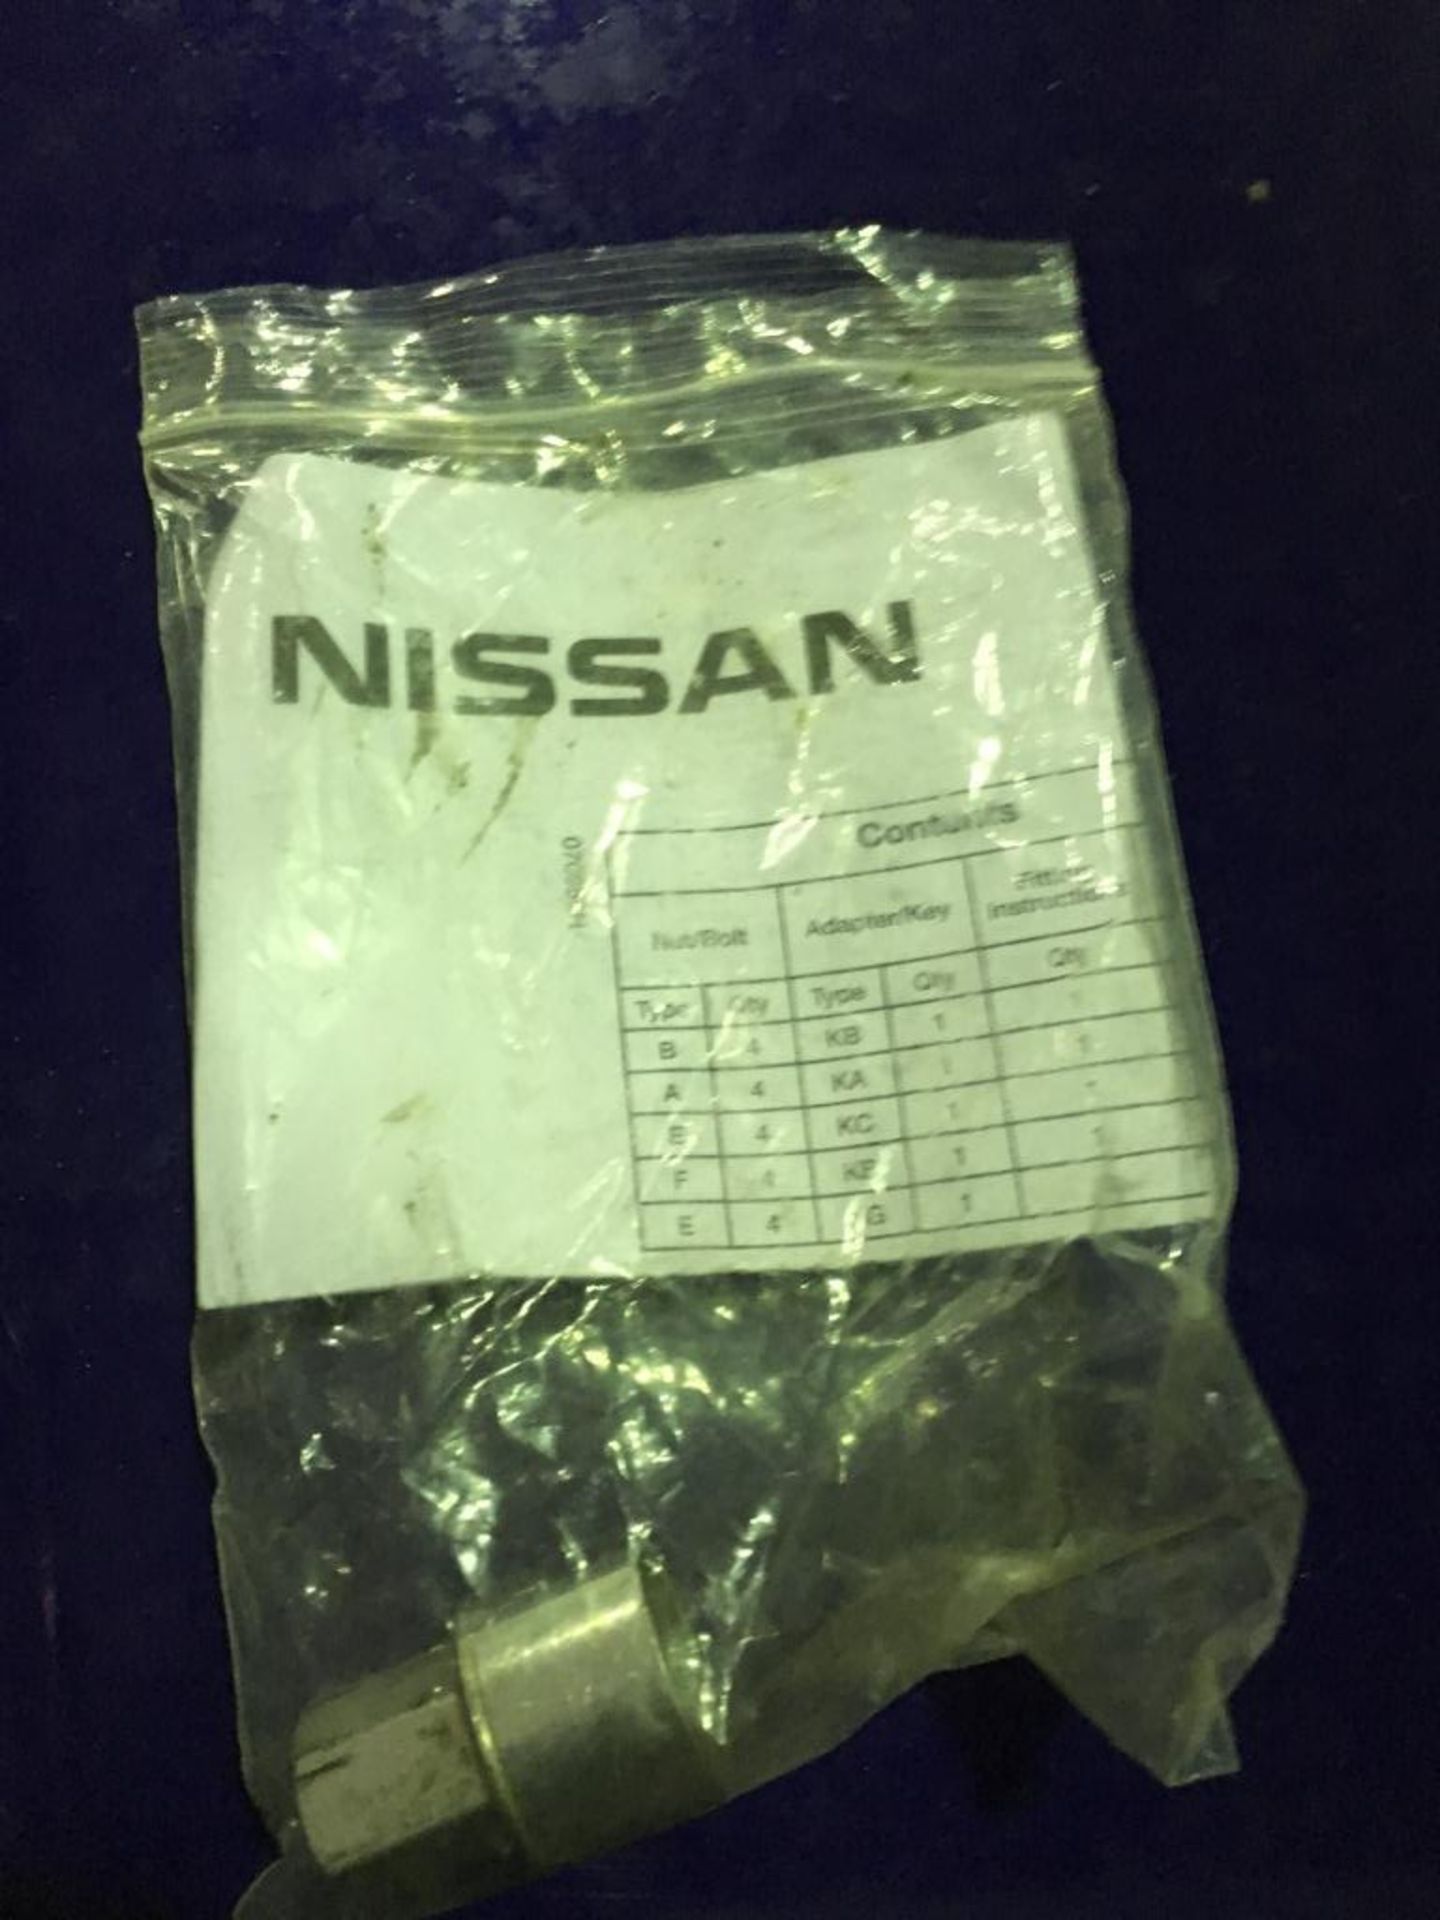 Nissan Qashqai Tekna DCI 5 door hatchback diesel car, Registration number J1 BEK, Date of - Bild 25 aus 30